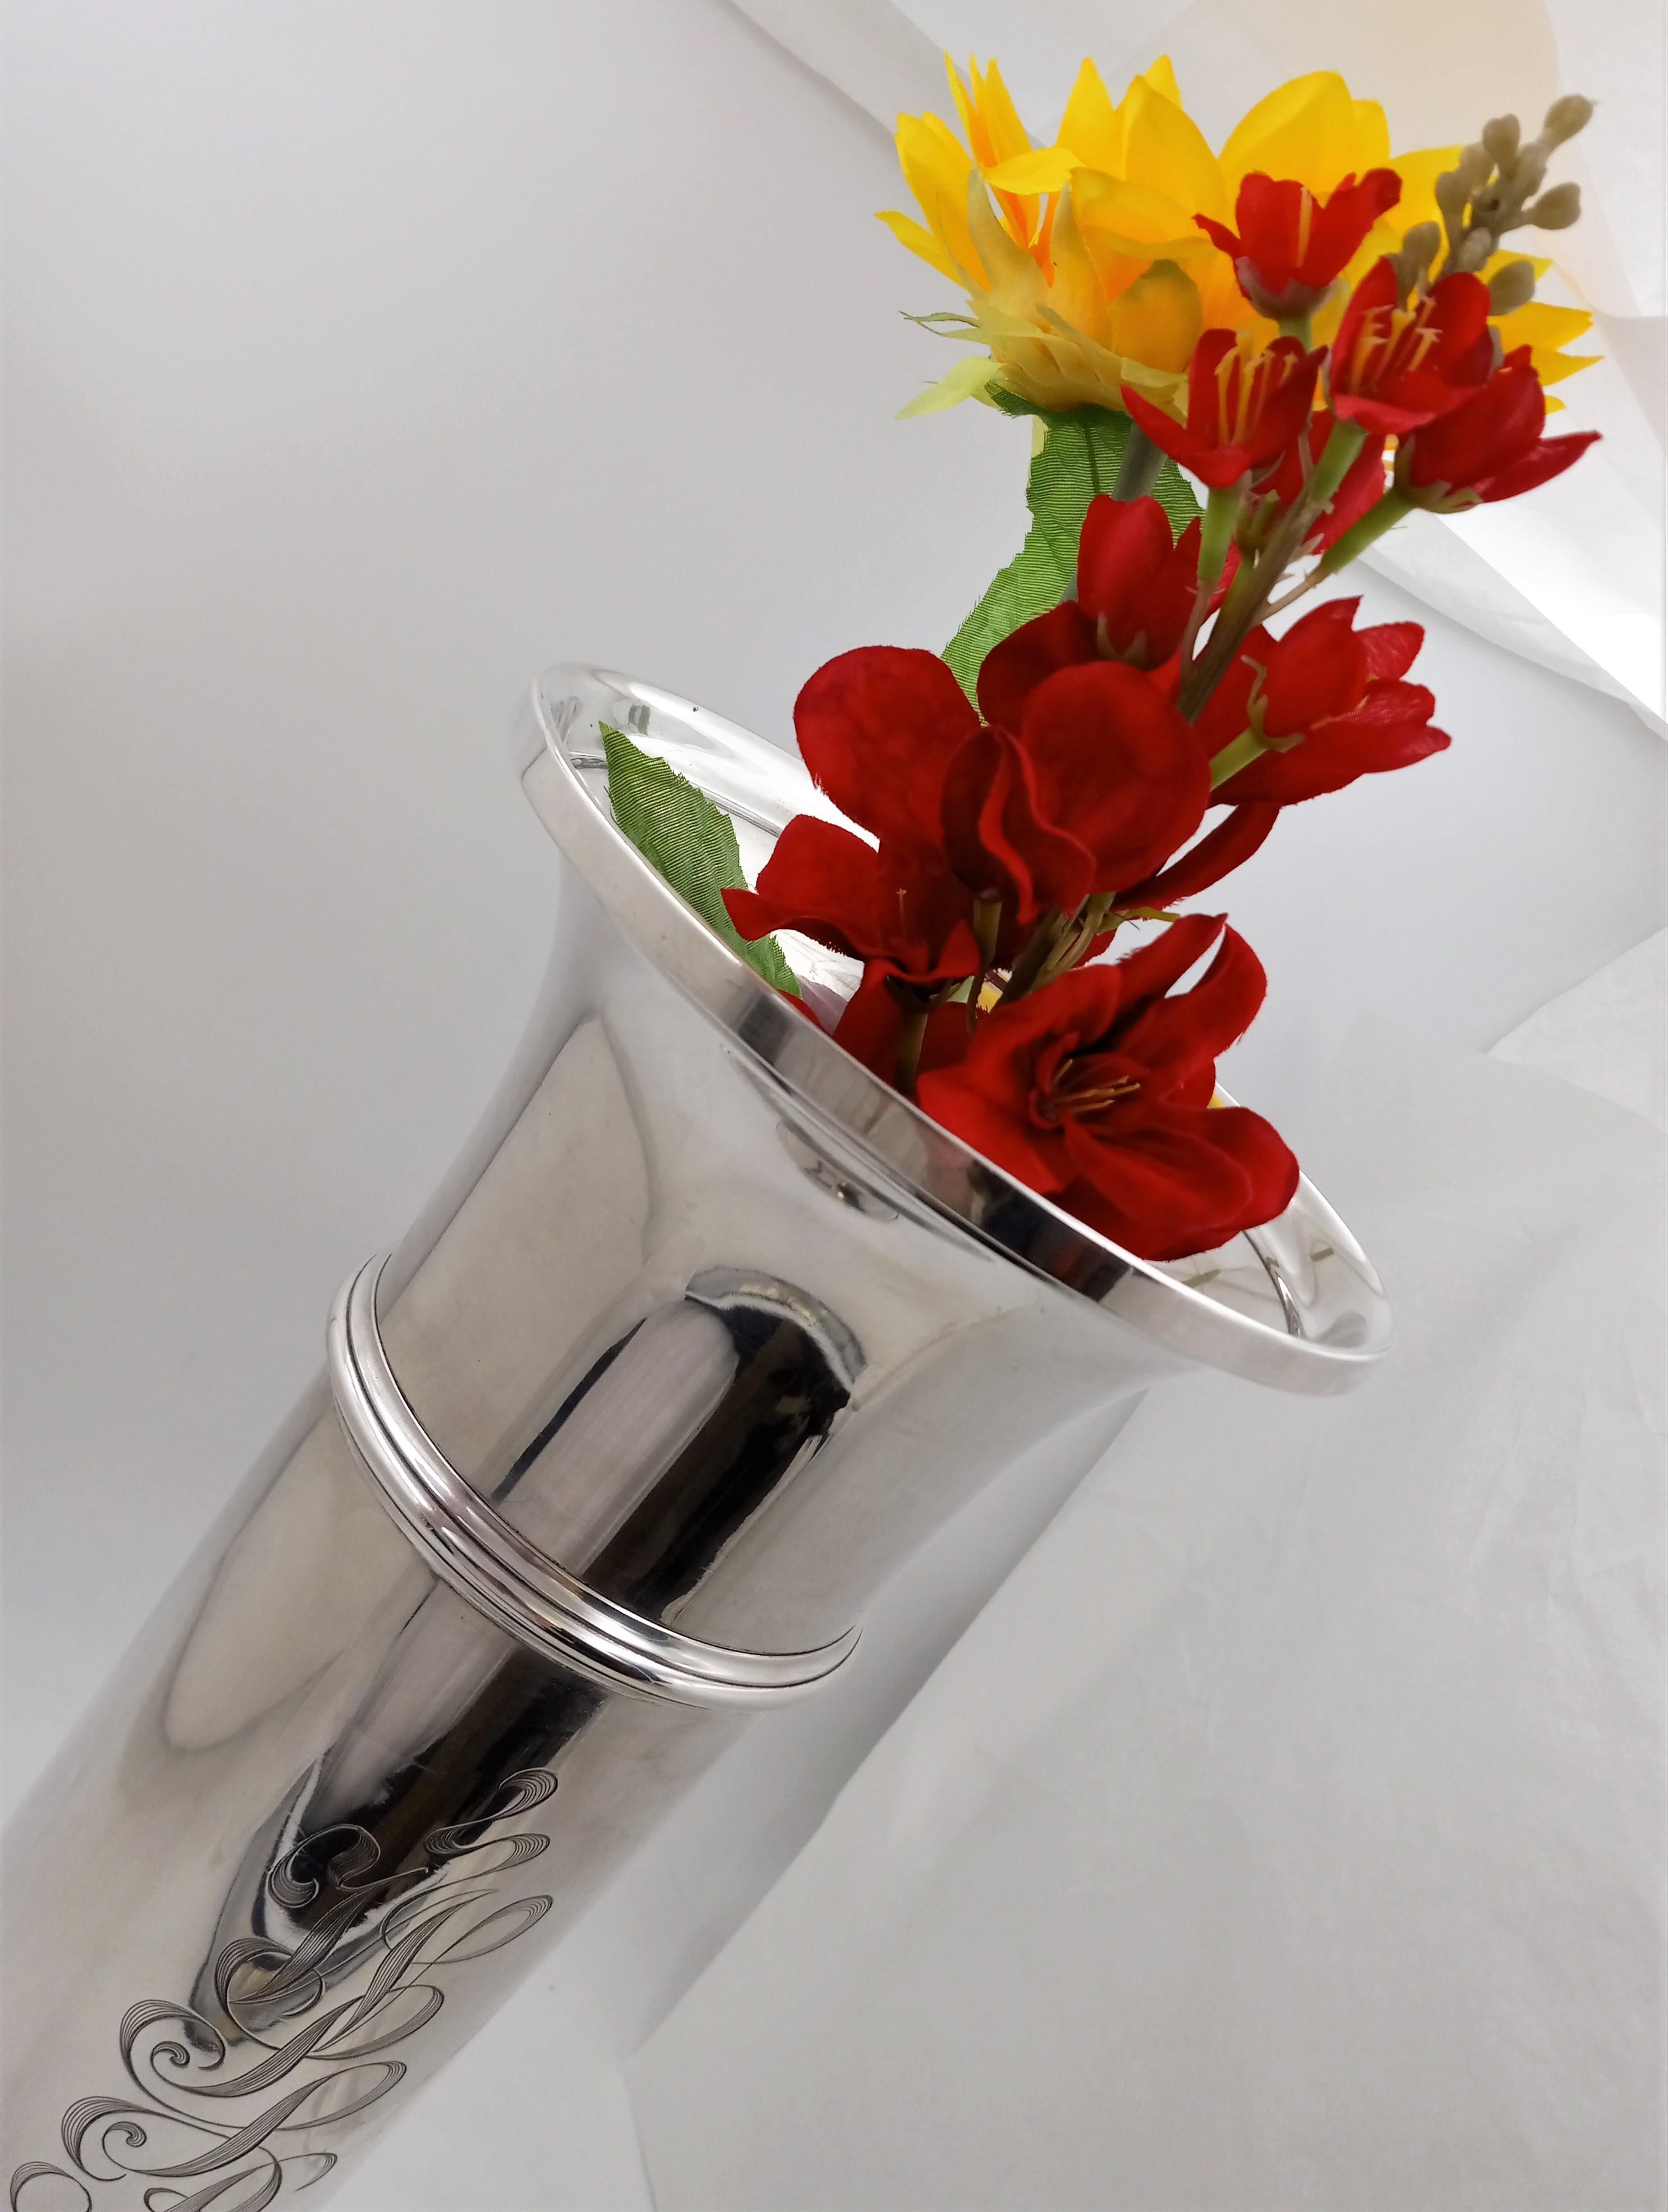 flower vase b&m